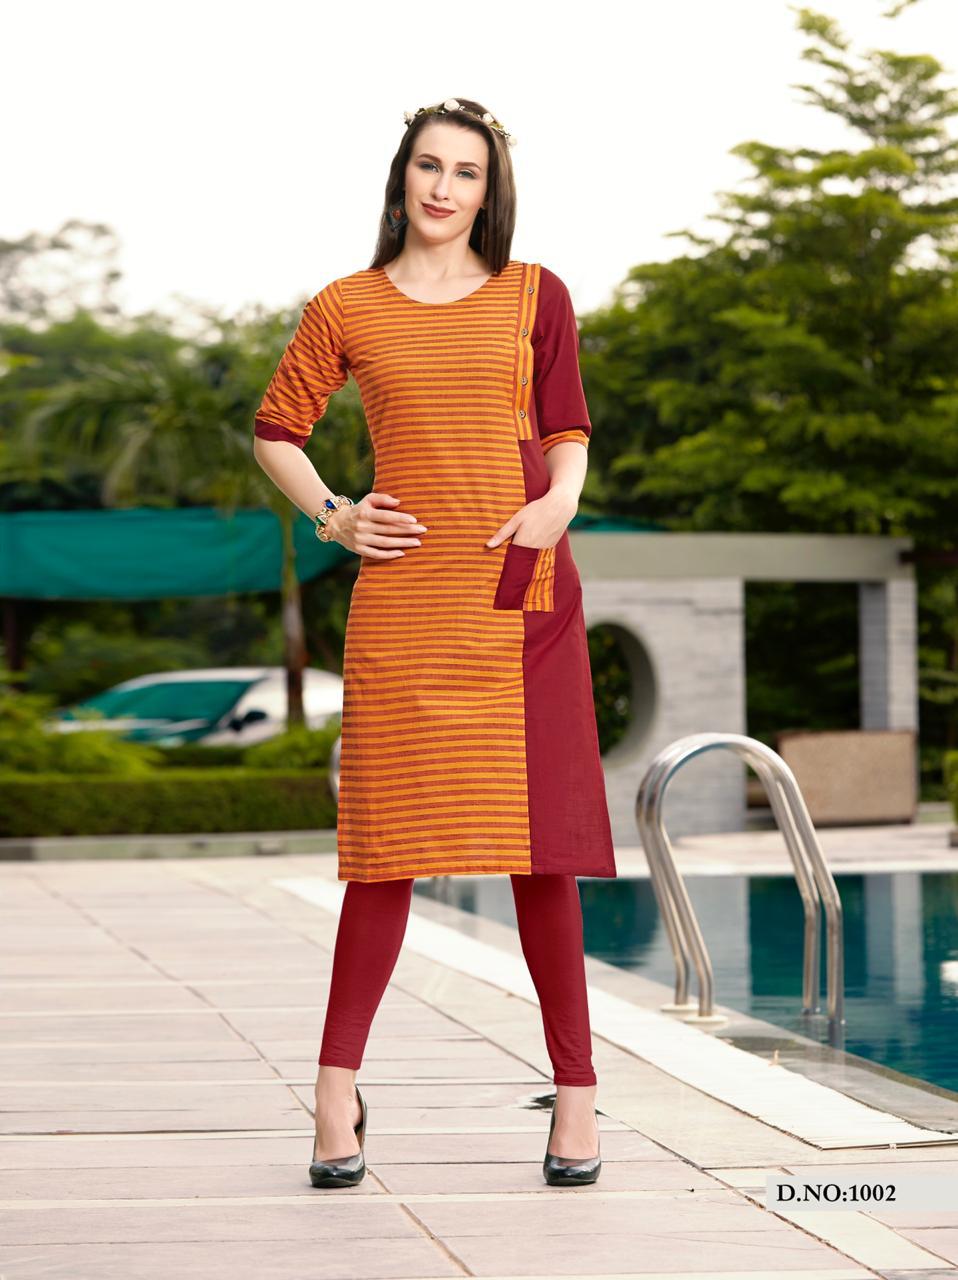 amaaya garments stripes colorful collection of kurtis at reasonable rate